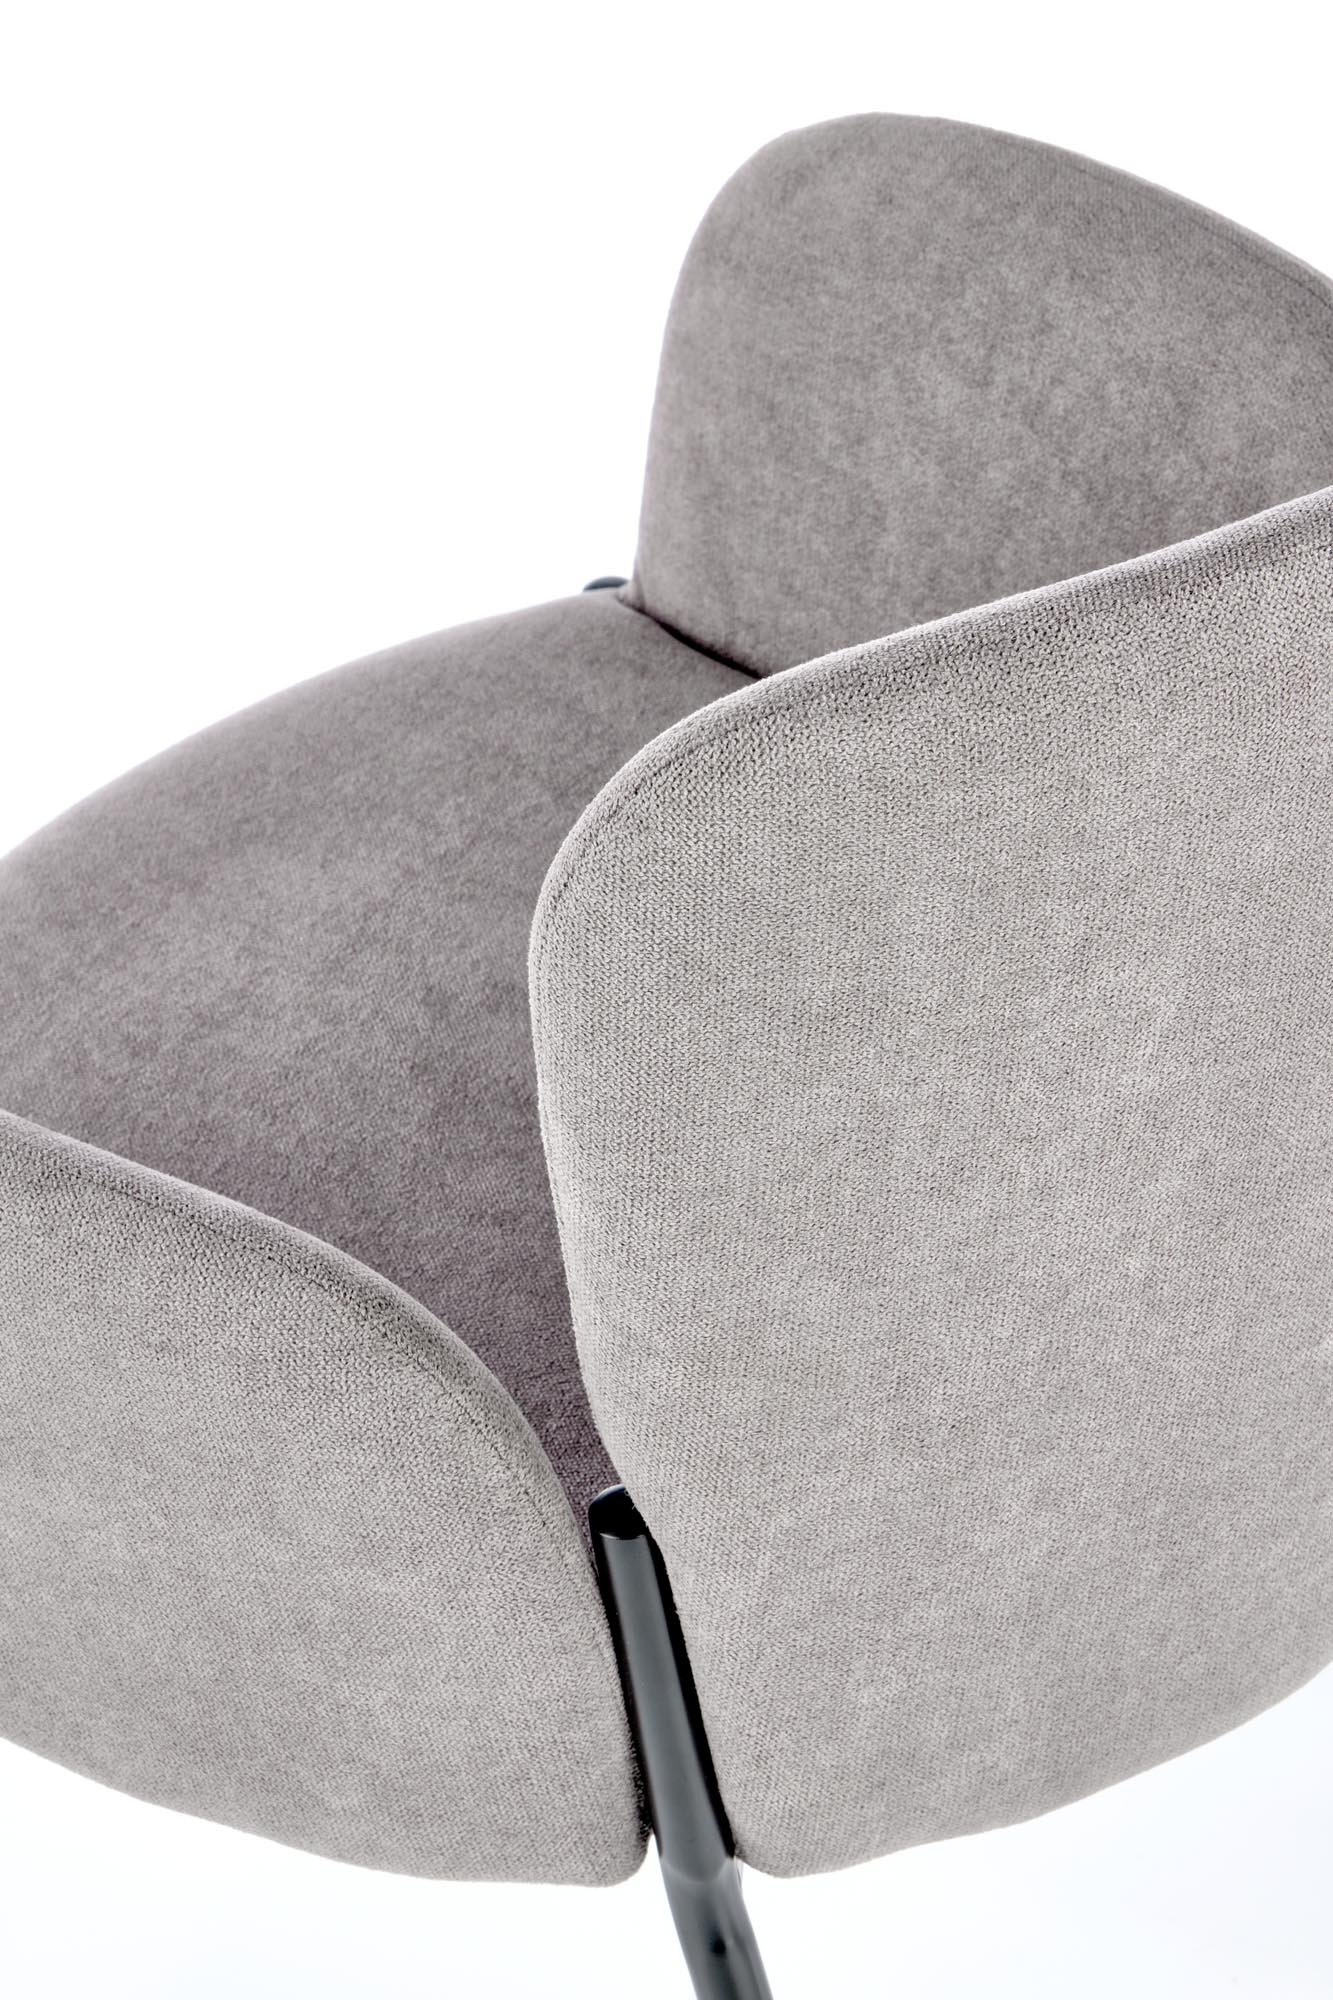 K445 stolica, boja: siva